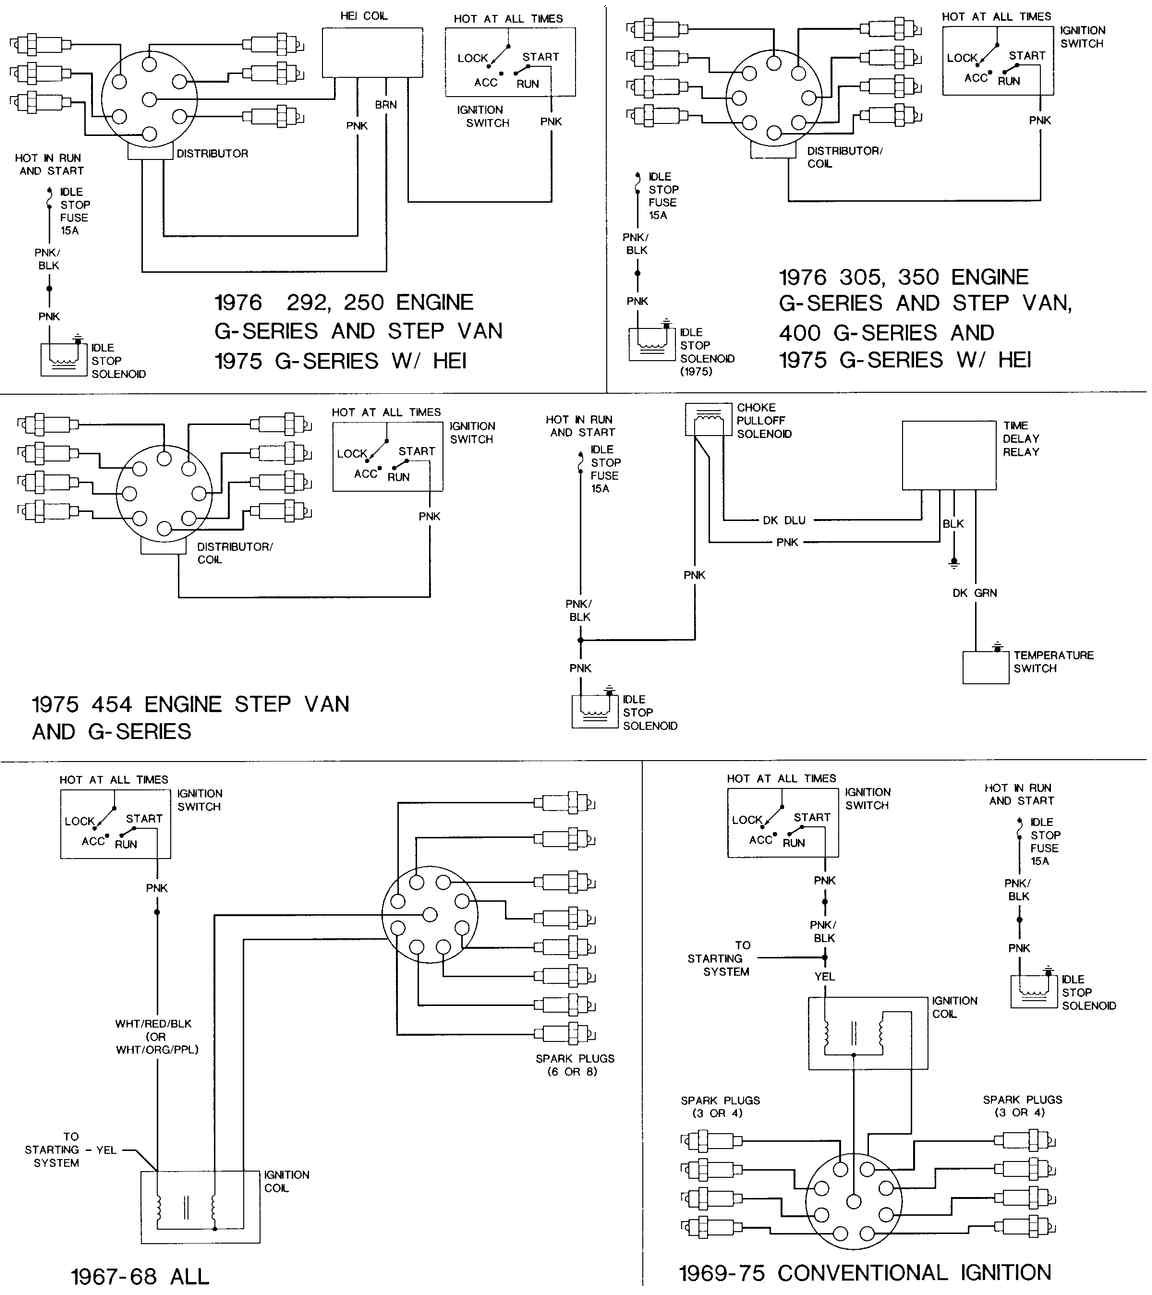 67 g10-wiring diagrams & parts - Chevrolet Forum - Chevy Enthusiasts Forums 1986 Silverado Wiring Diagram ChevroletForum